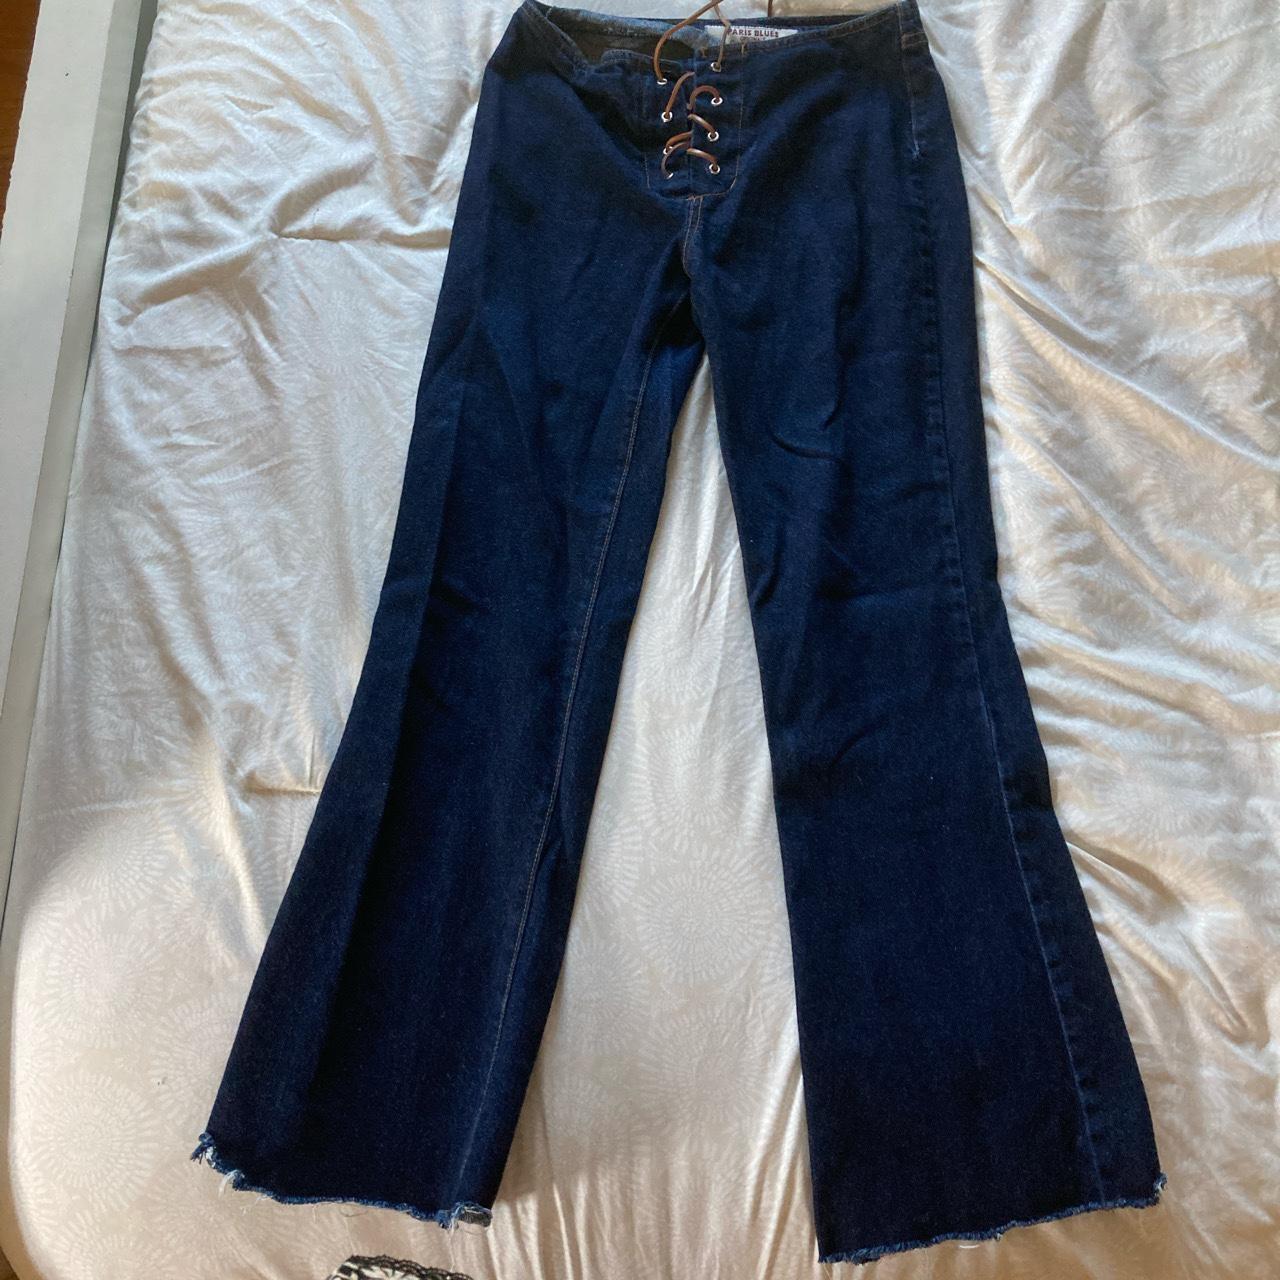 Vintage Paris Blues lace up flare jeans dark wash... - Depop